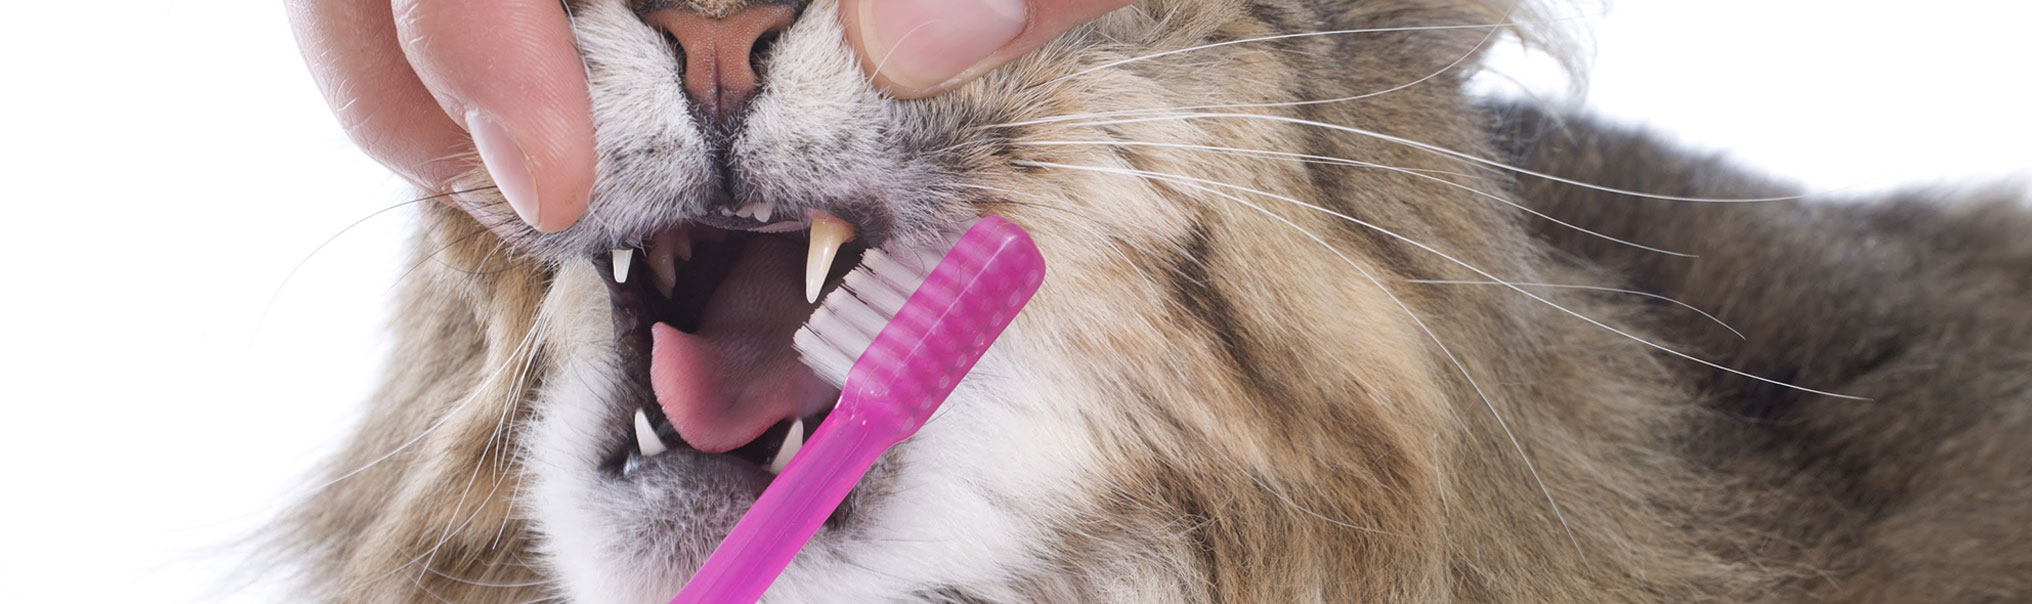 Hygiène dentaire du chat : un soin essentiel